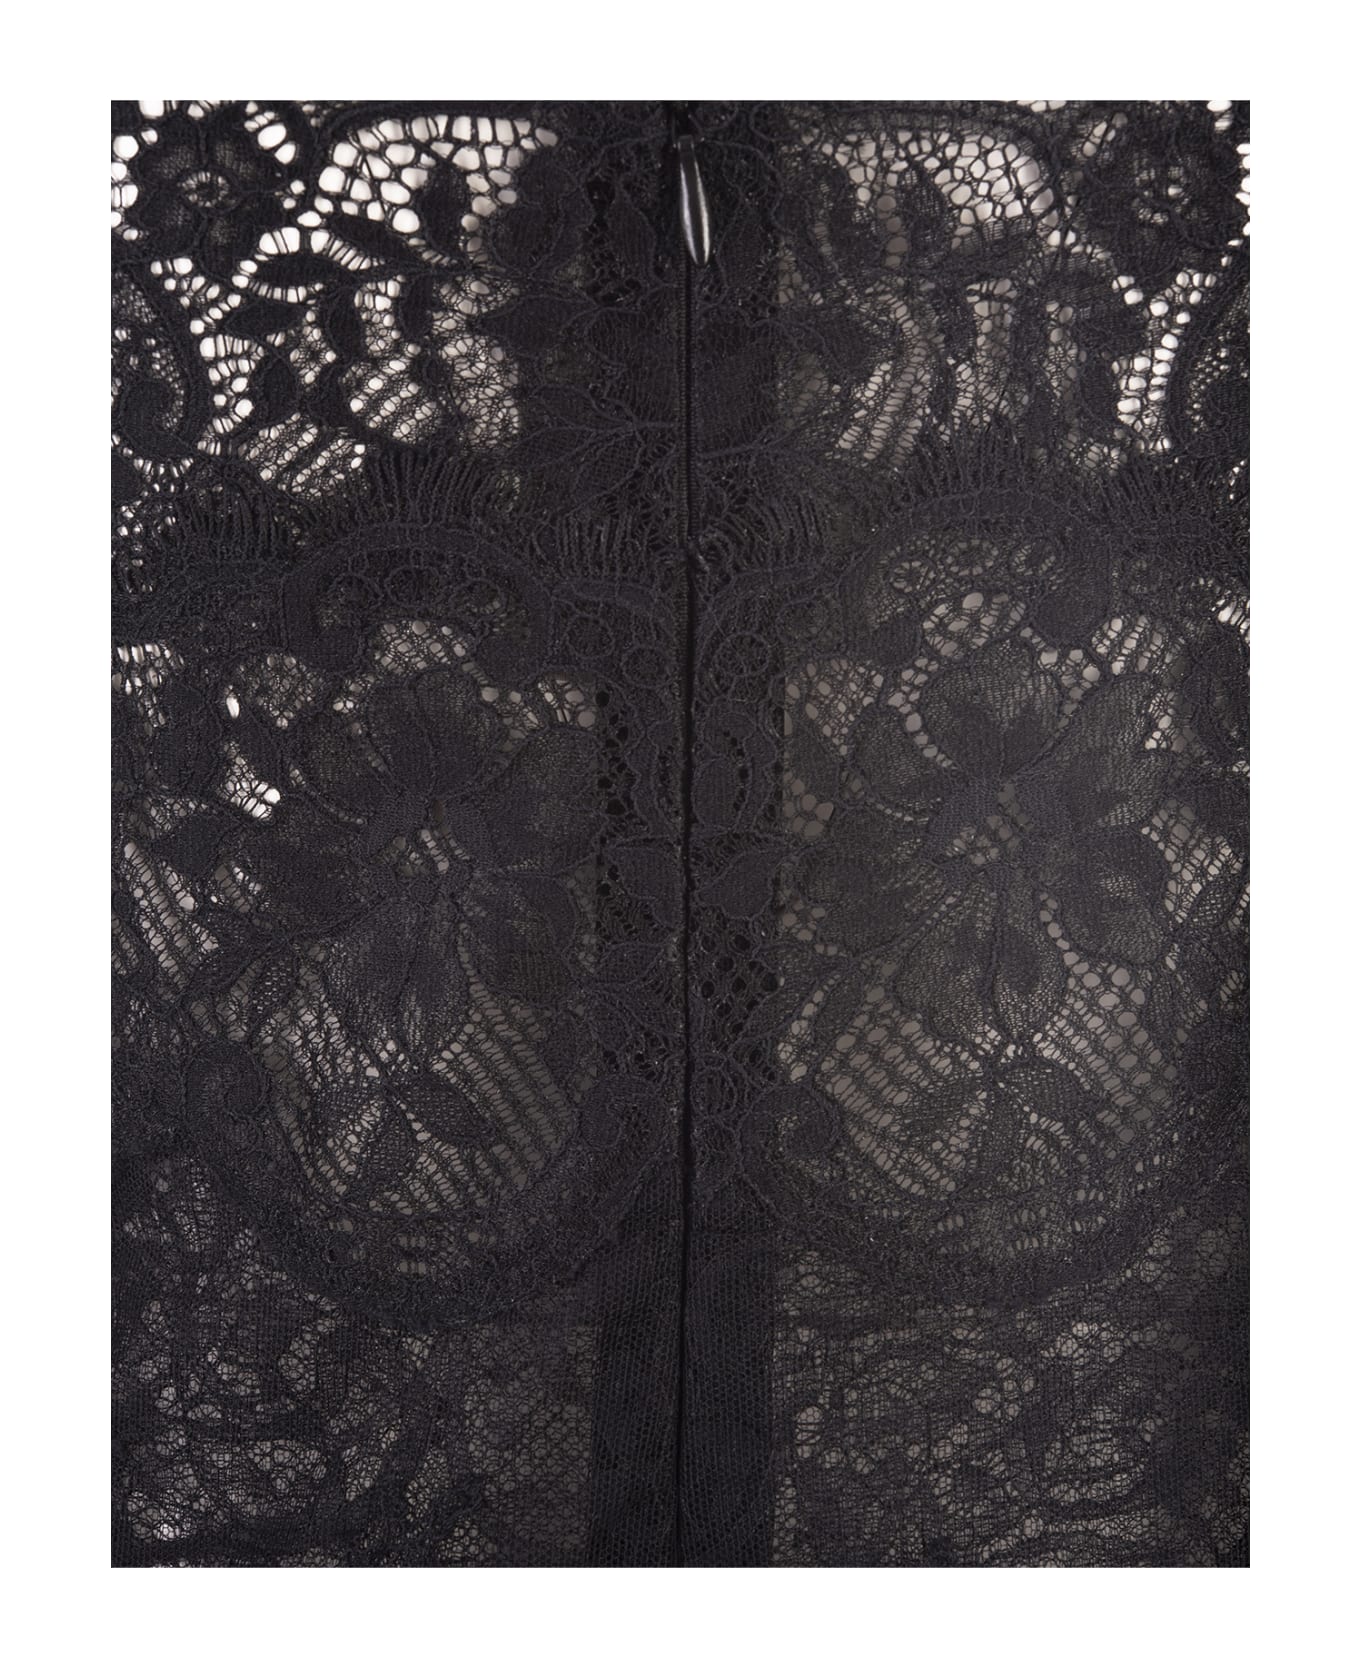 Ermanno Scervino All-over Black Lace Lingerie Dress - Black